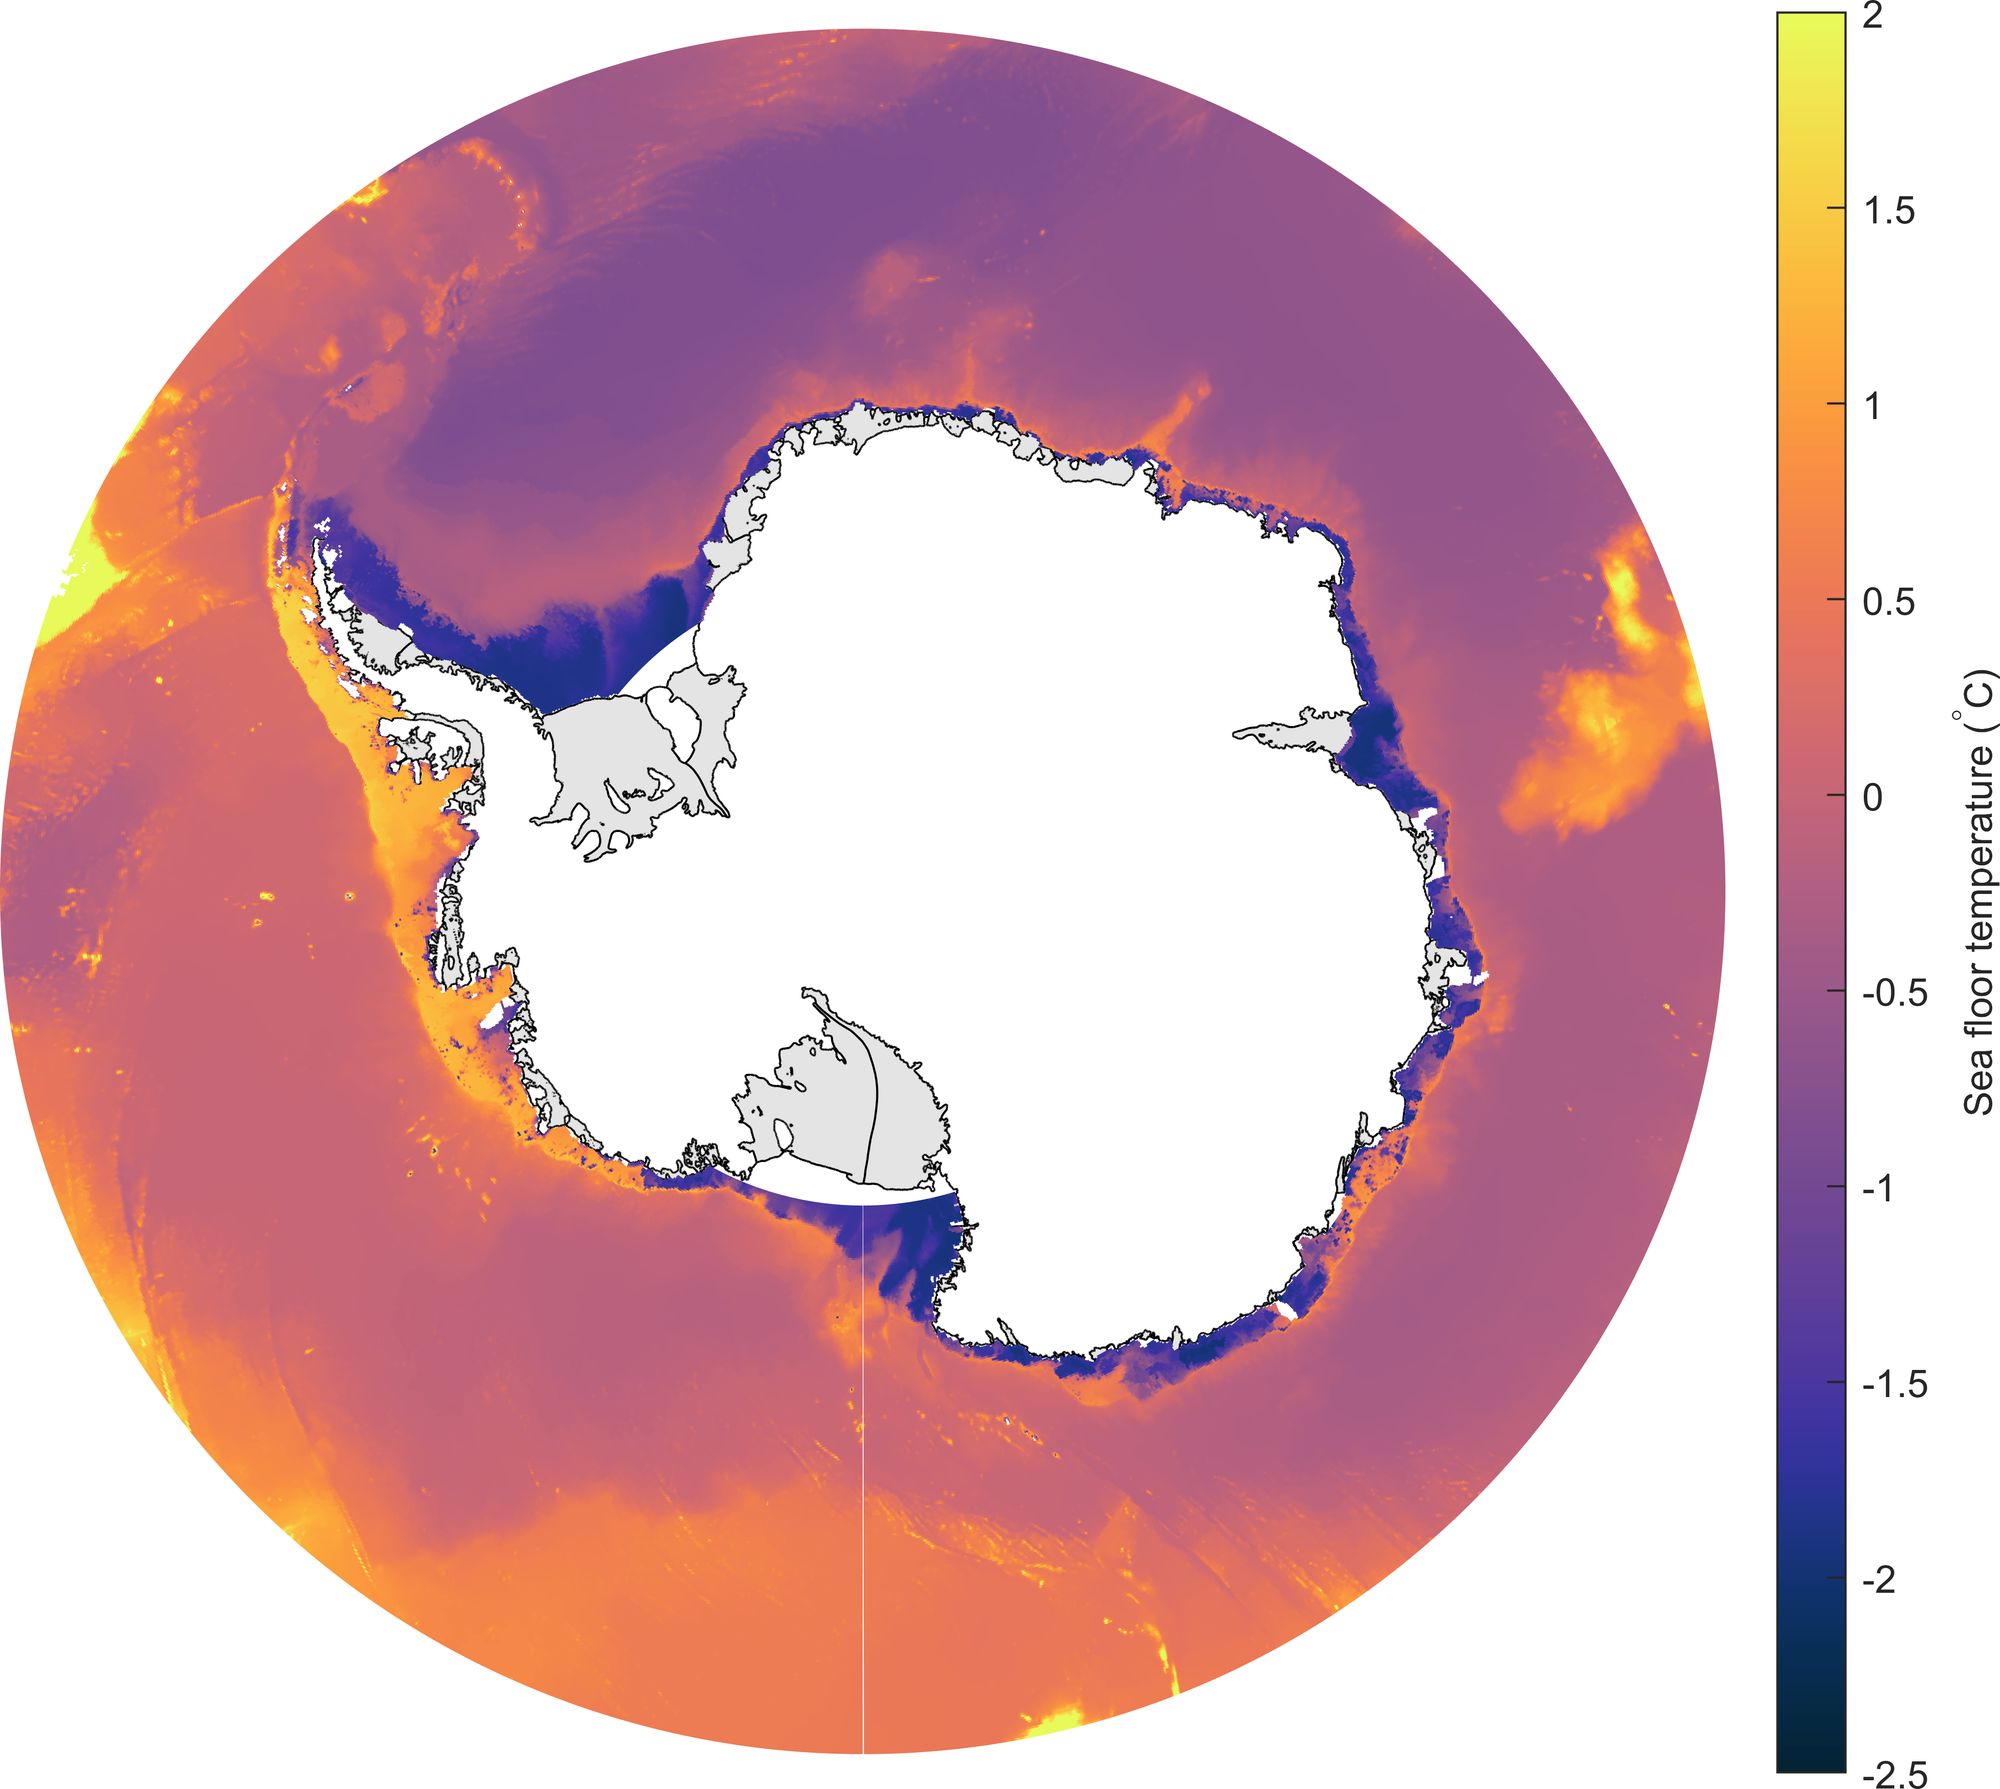 Grafik, die in unterschiedlichen Farben zeigt, wie warm oder kalt das Wasser rund um die Antarktis ist. Gelb sind Bereiche, die +2 Grad Celsius aufweisen, dunkelblau ist hingegen Wasser mit bis zu -1,5 Grad Celsius